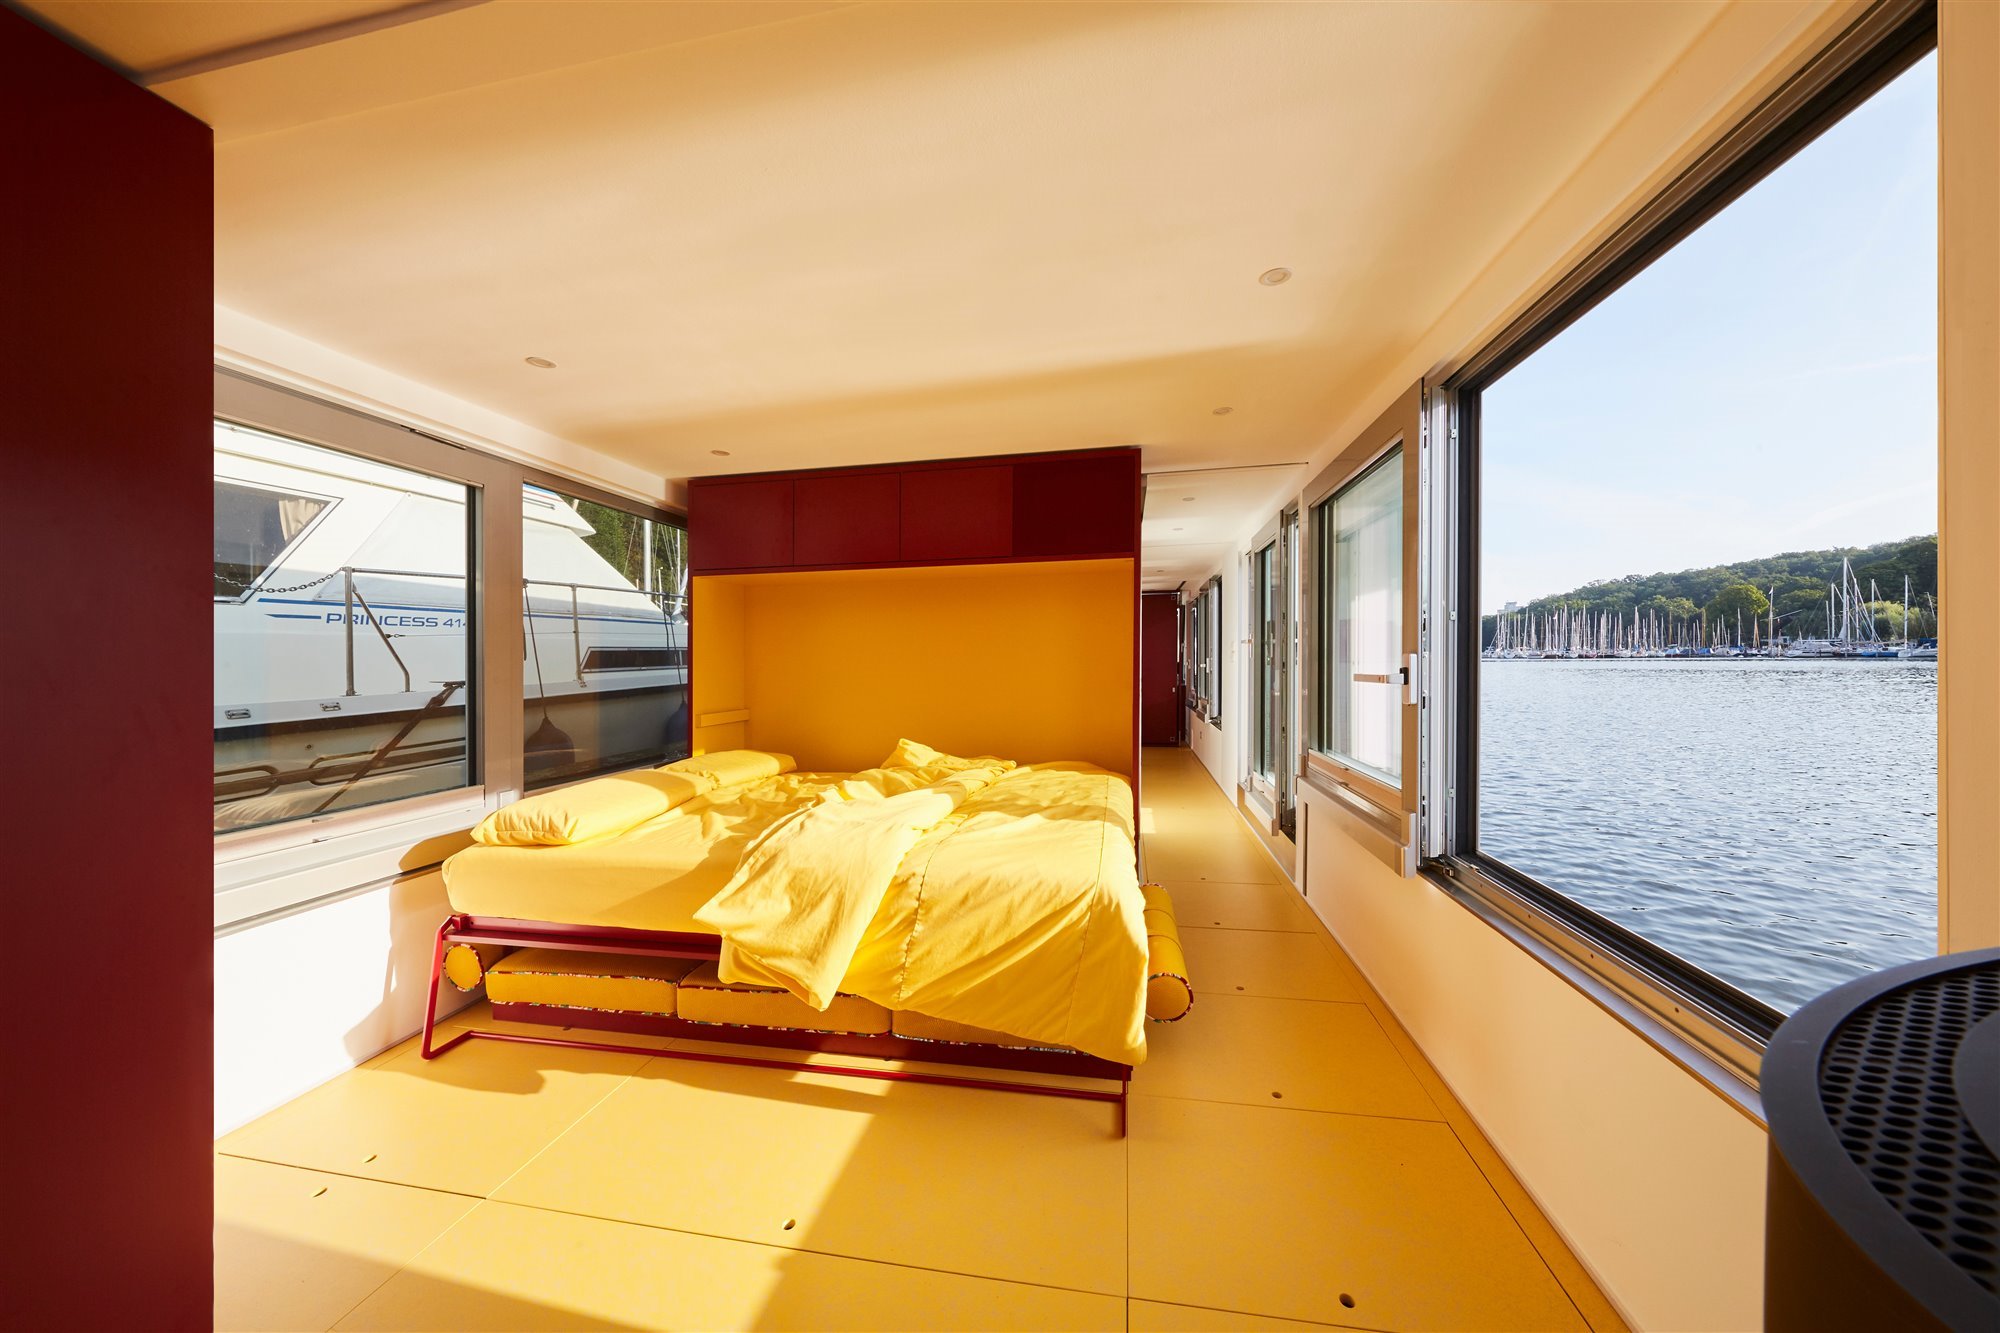 Dormitorio tiny home barco